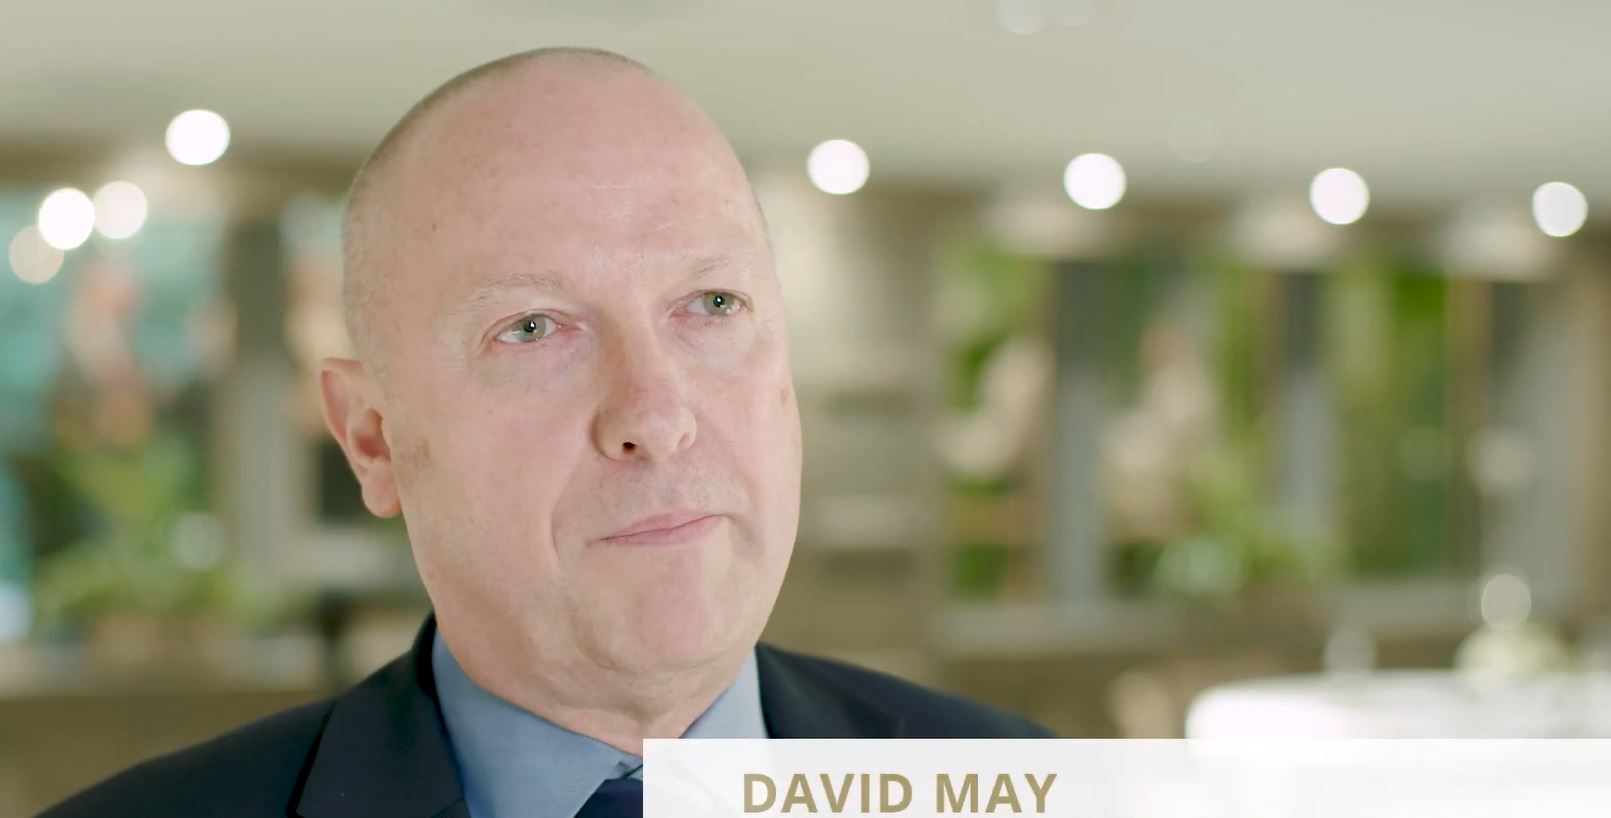 David May as Board Trustee